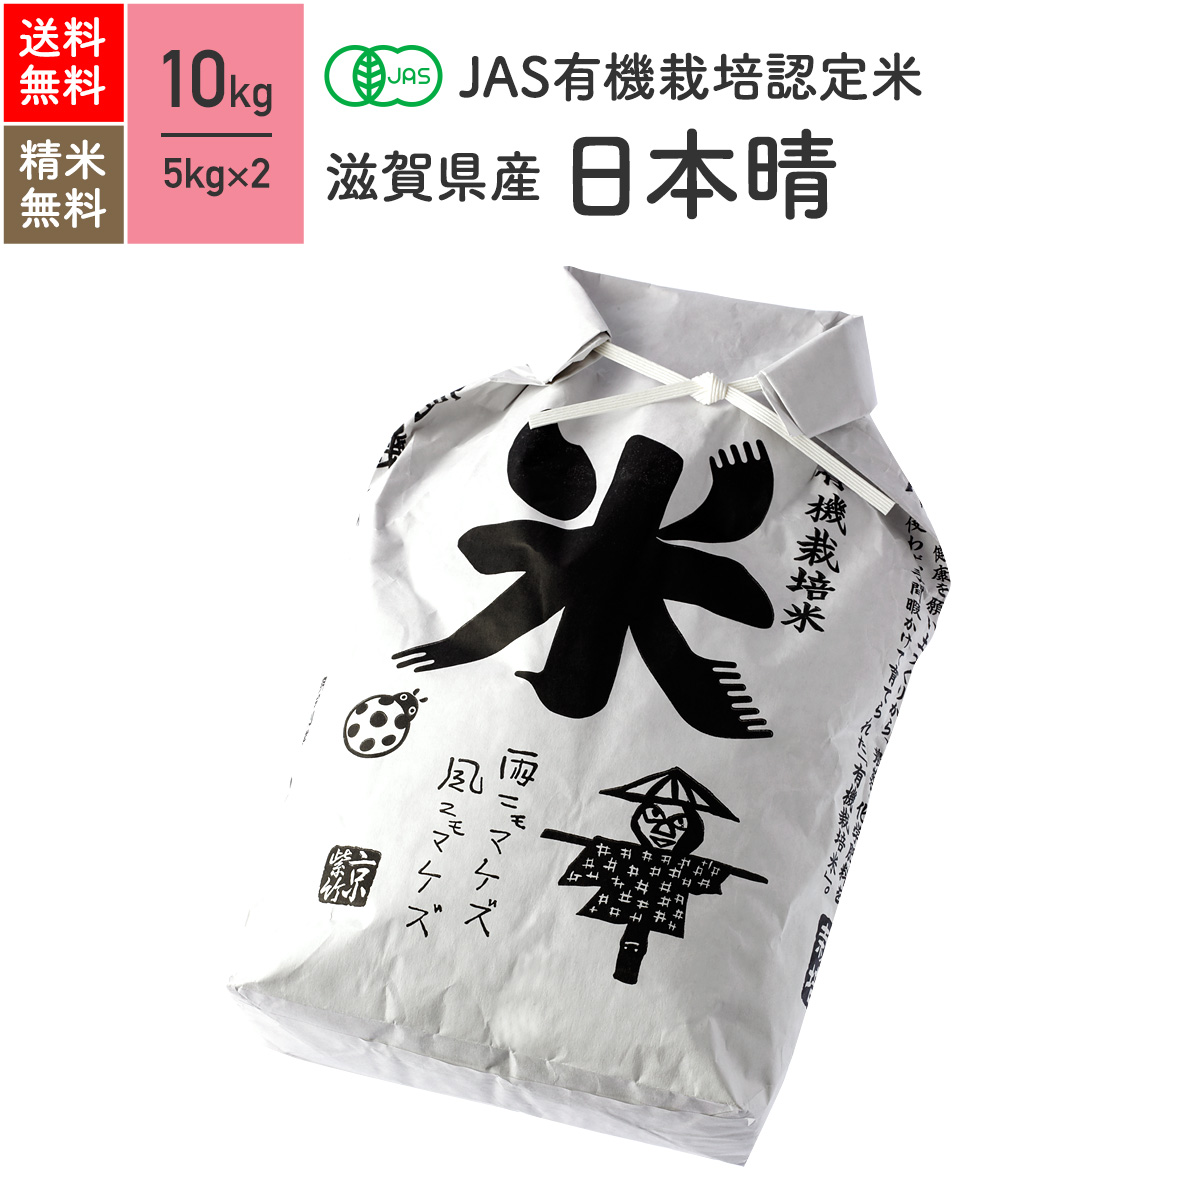 無農薬 玄米 米 10kg日本晴 滋賀県産 JAS有機米 令和元年産 送料無料